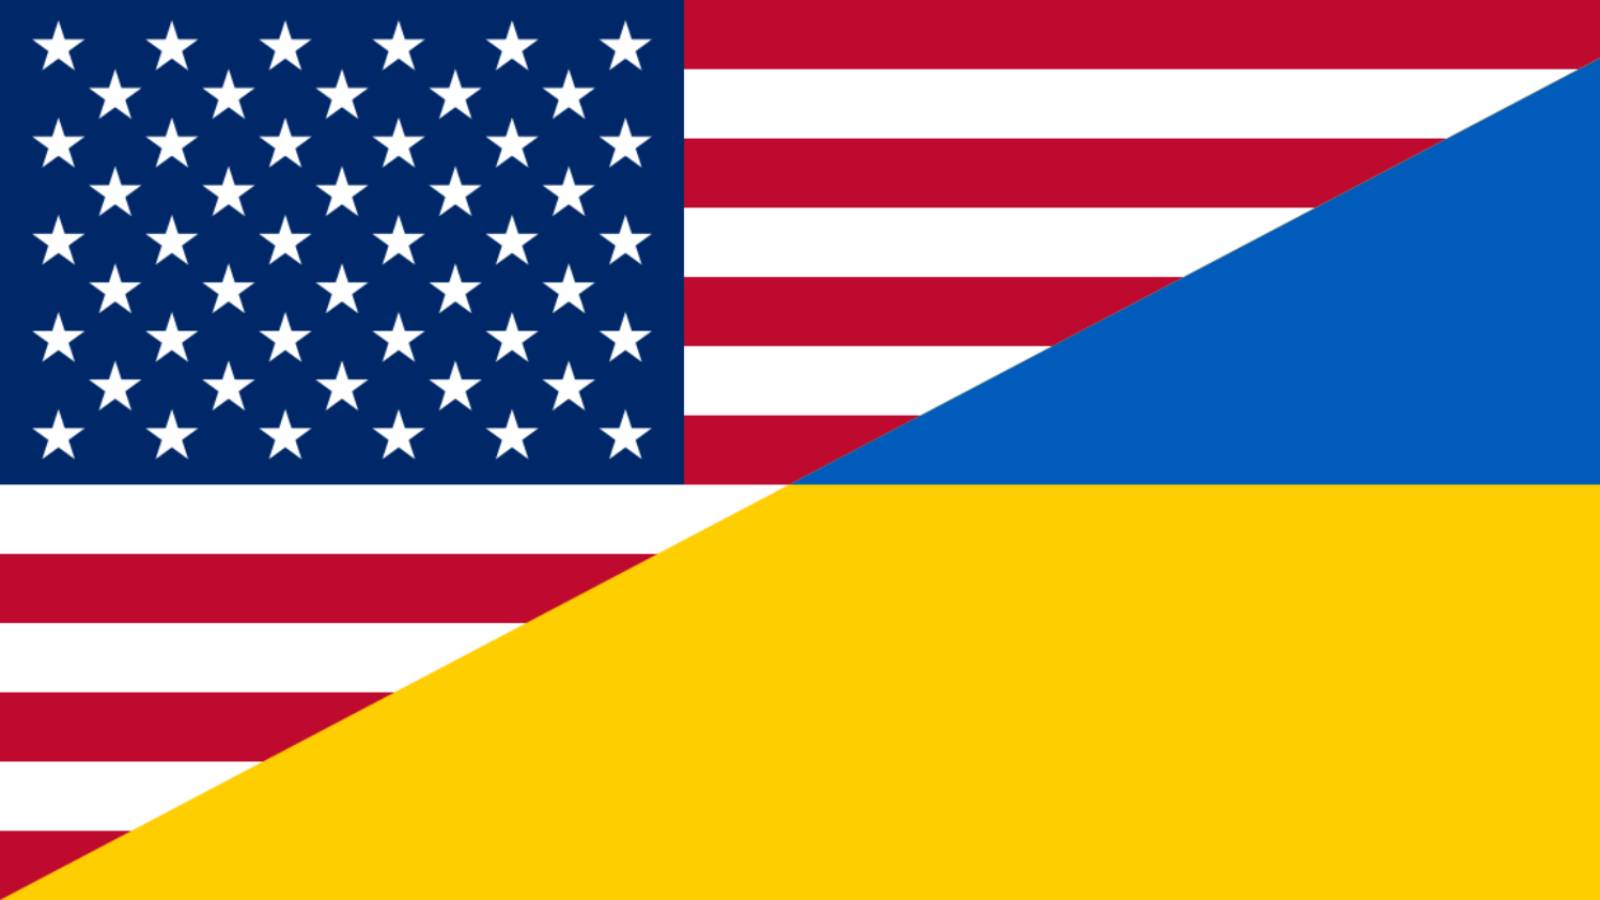 SUA Anunta un Important Pachet de Ajutor Militar pentru Ucraina